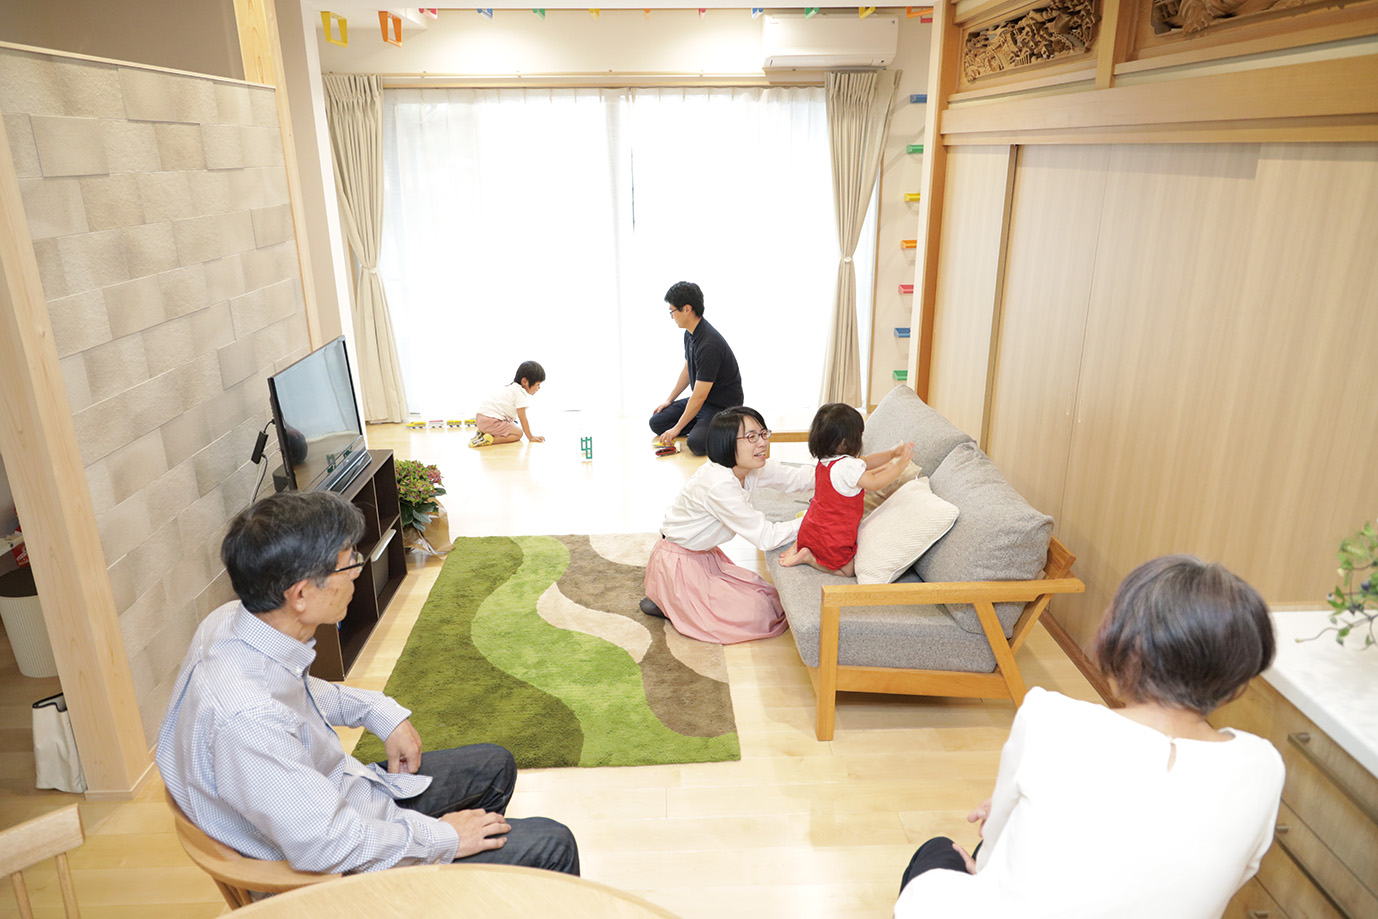 断熱リノベーションの実例集『私の断熱ライフ』を展開 第１弾は、築38年の日本家屋を活かし二世帯住宅へリノベーションした事例を公開 サムネイル画像